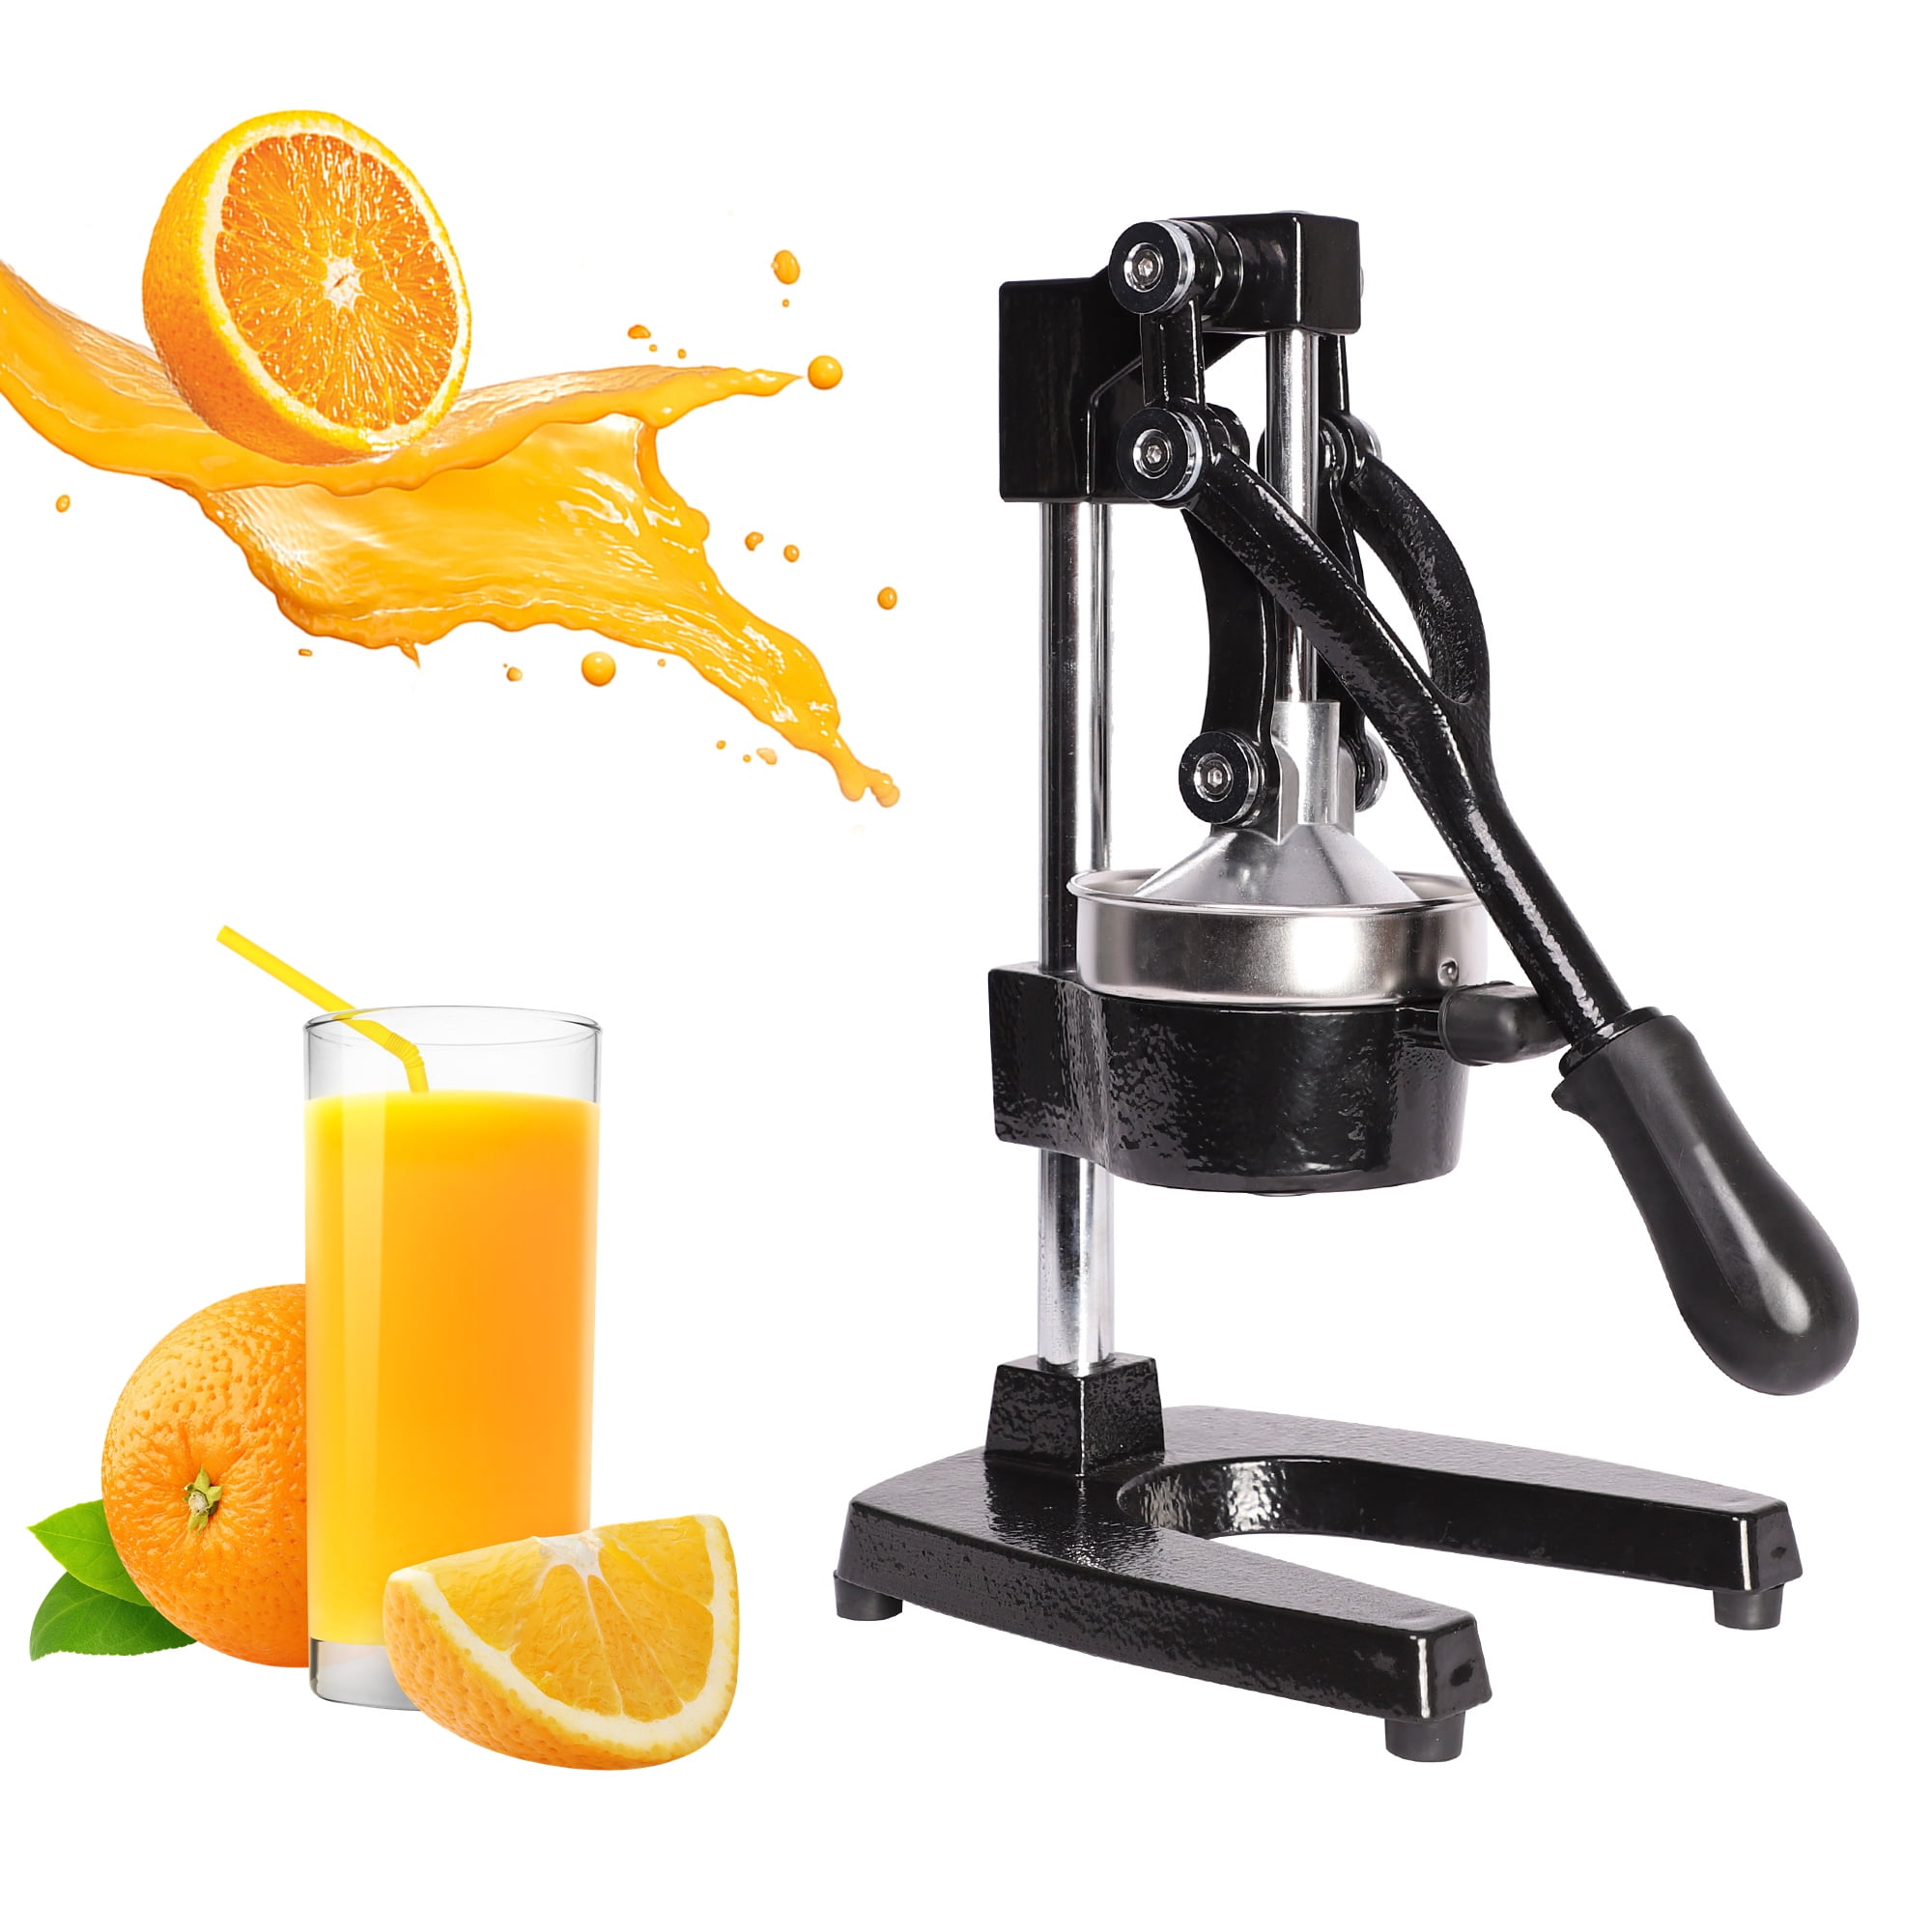 VEVOR Hand Press Fruit Juicer Pro Manual Citrus Juice Squeezer For Citrus Lemon 